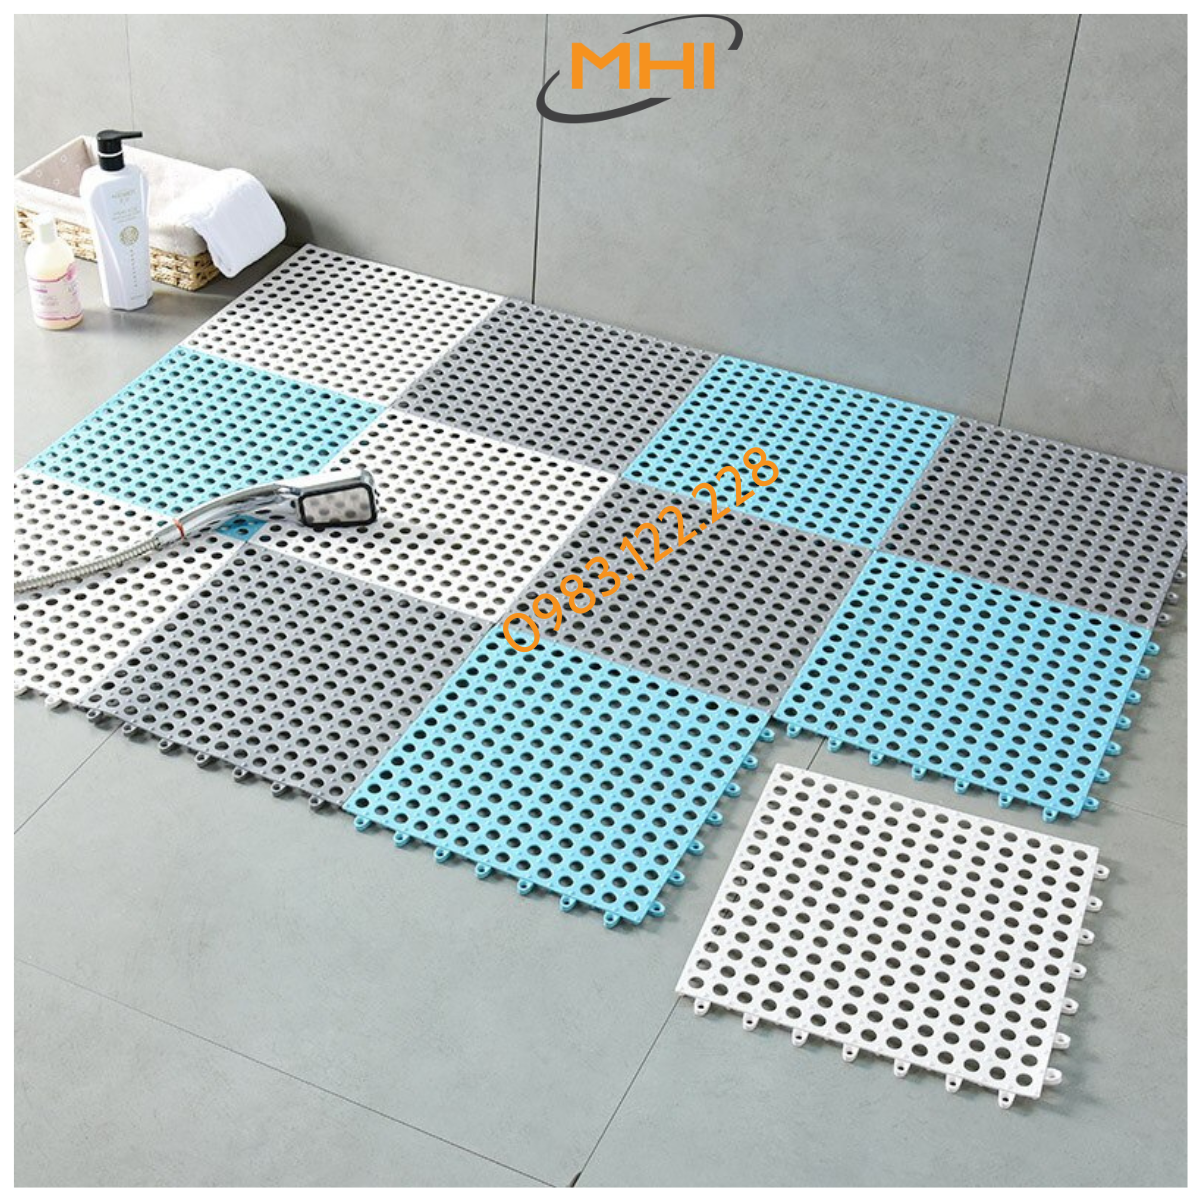 Tấm lót sàn nhà vệ sinh MHI. Vỉ nhựa lót sàn chống trơn Trải Sàn Nhà Tắm/Vệ Sinh/Nhà Bếp.